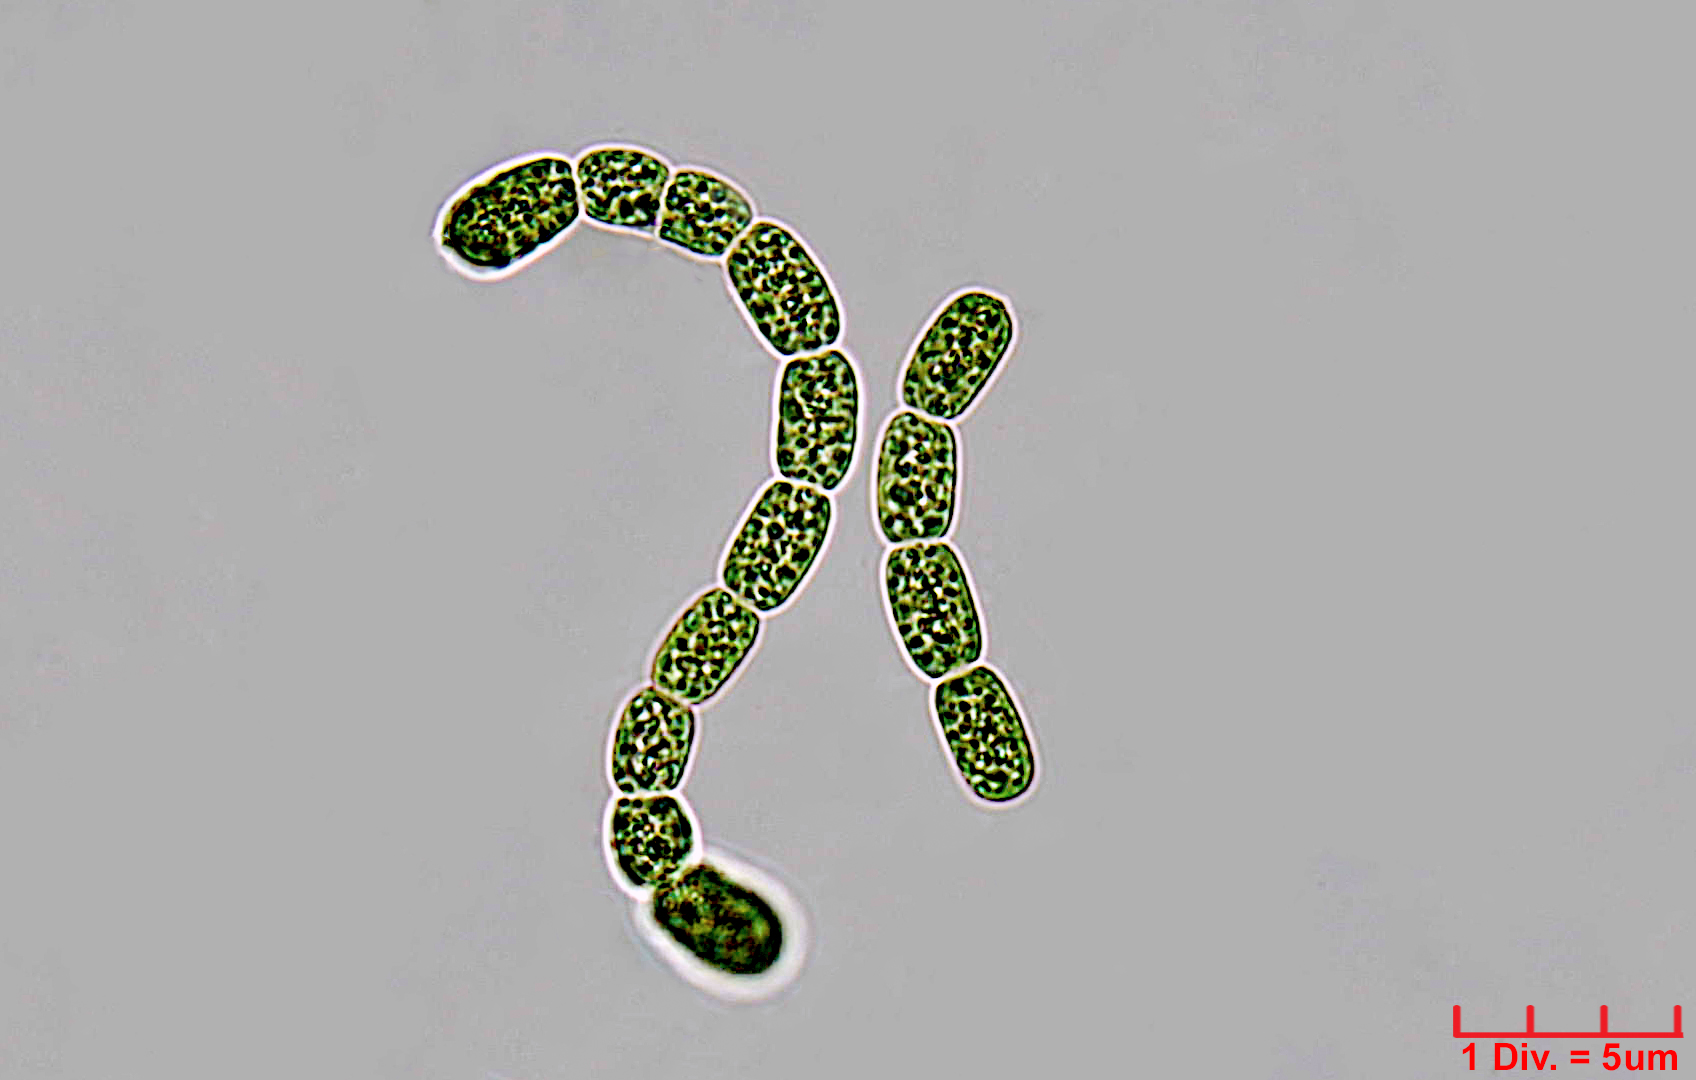 Cyanobacteria/Nostocales/Nostocaceae/Desmonostoc/muscorum/desmonostoc-muscorum-593.jpg